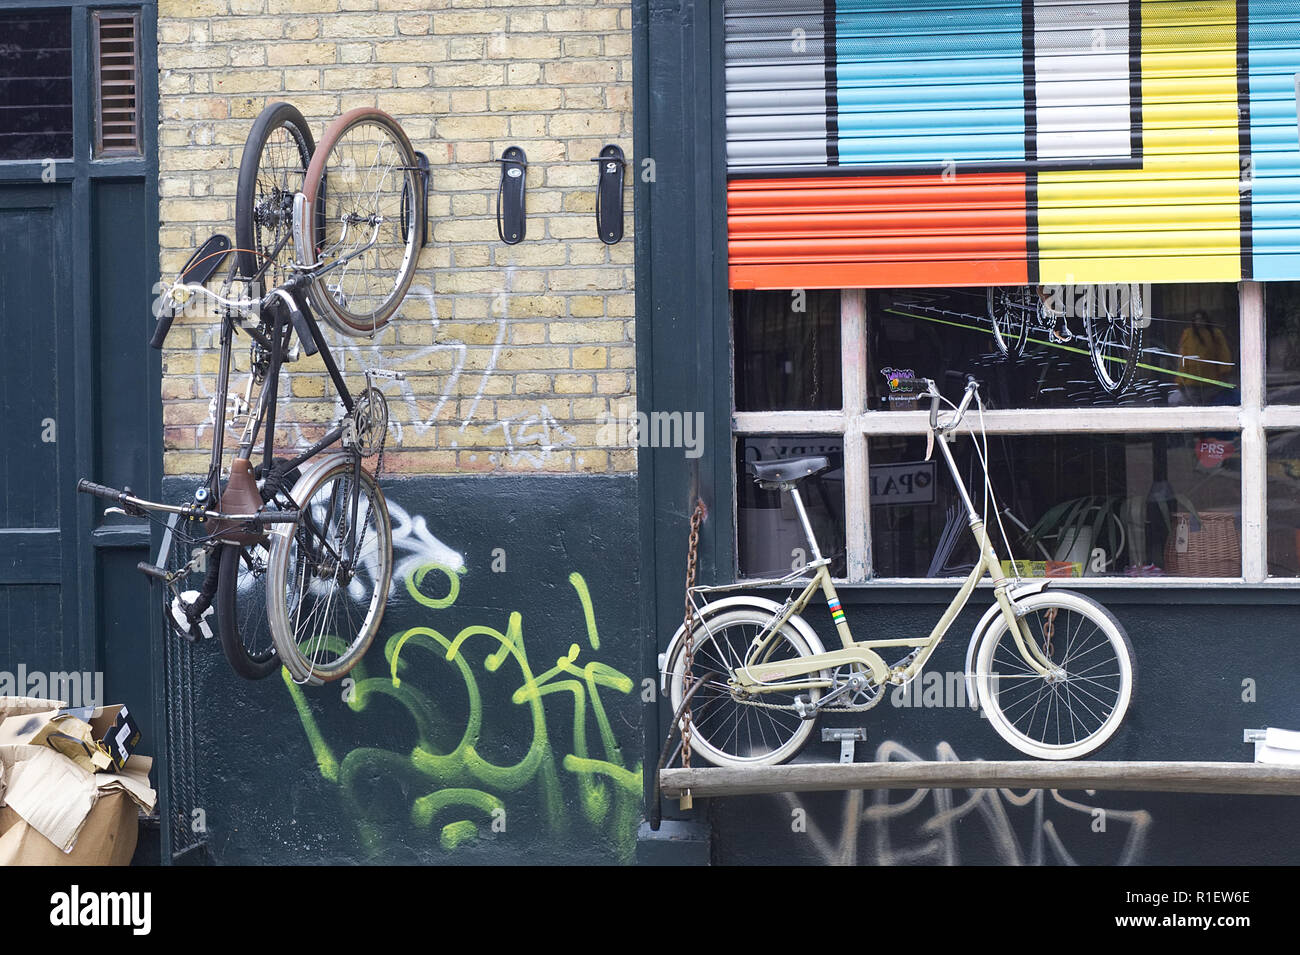 Des vélos sur l'extérieur d'un magasin de cycle d'affichage Banque D'Images